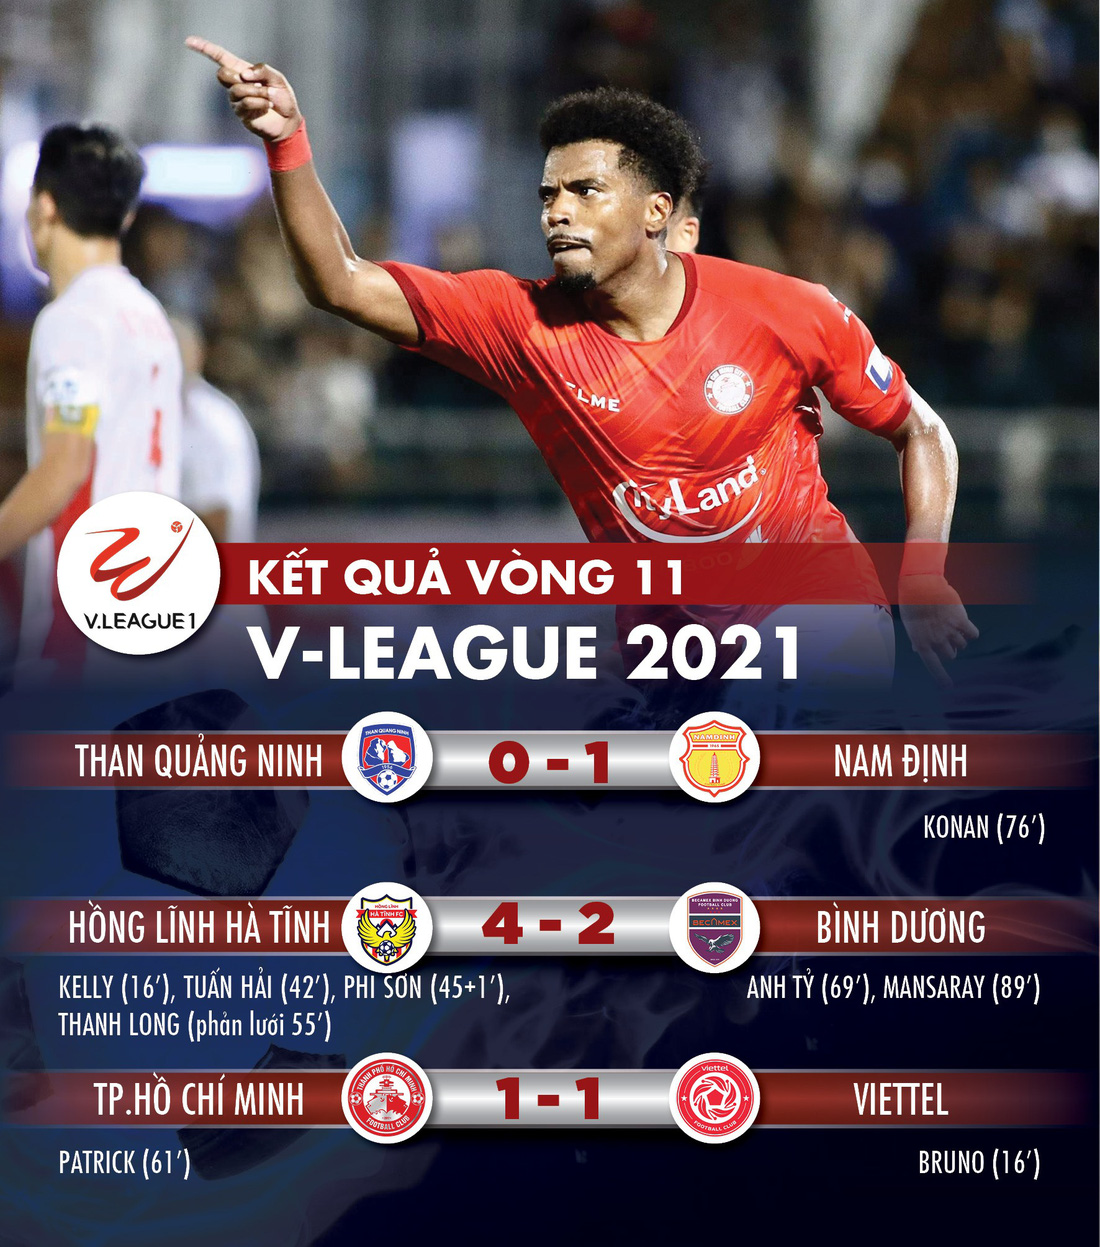 Kết quả, bảng xếp hạng V-League 2021: Viettel vào tốp đua vô địch, CLB TP.HCM còn ít hy vọng - Ảnh 1.